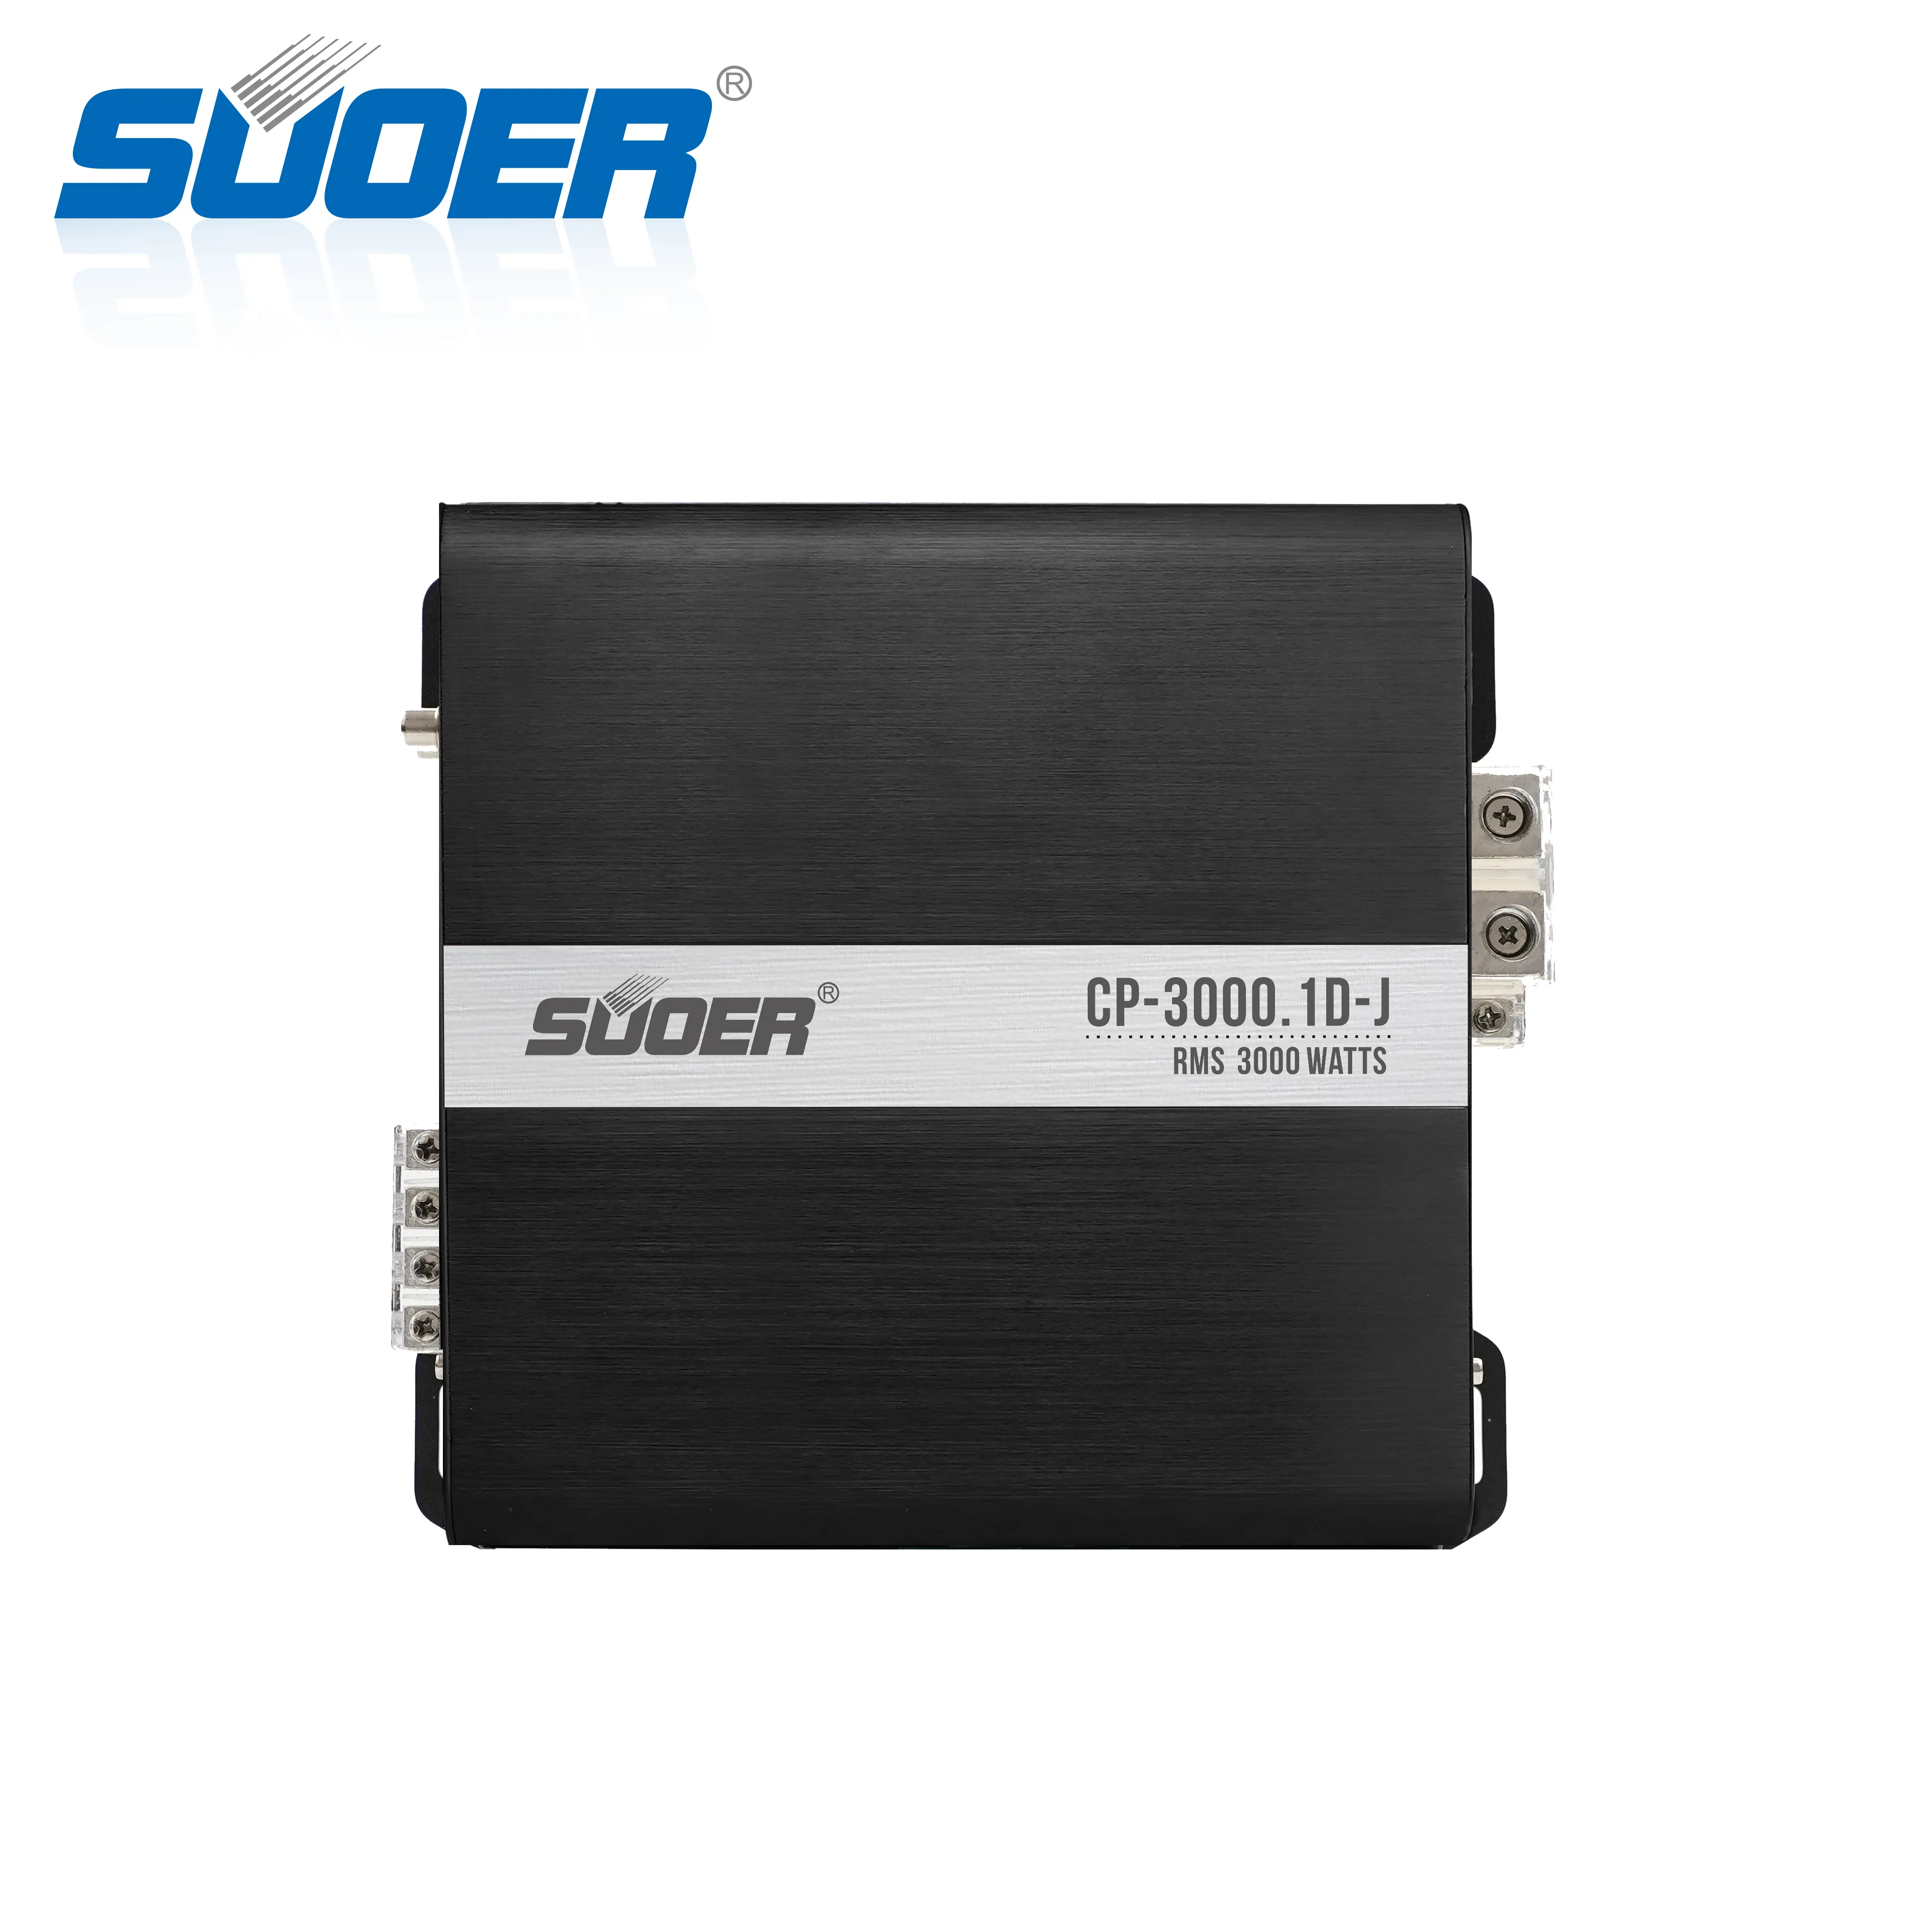 Suoer CP-3000.1d-j 3000 Watts giá tốt âm thanh xe hơi khuếch đại công suất nhà sản xuất tại Trung Quốc